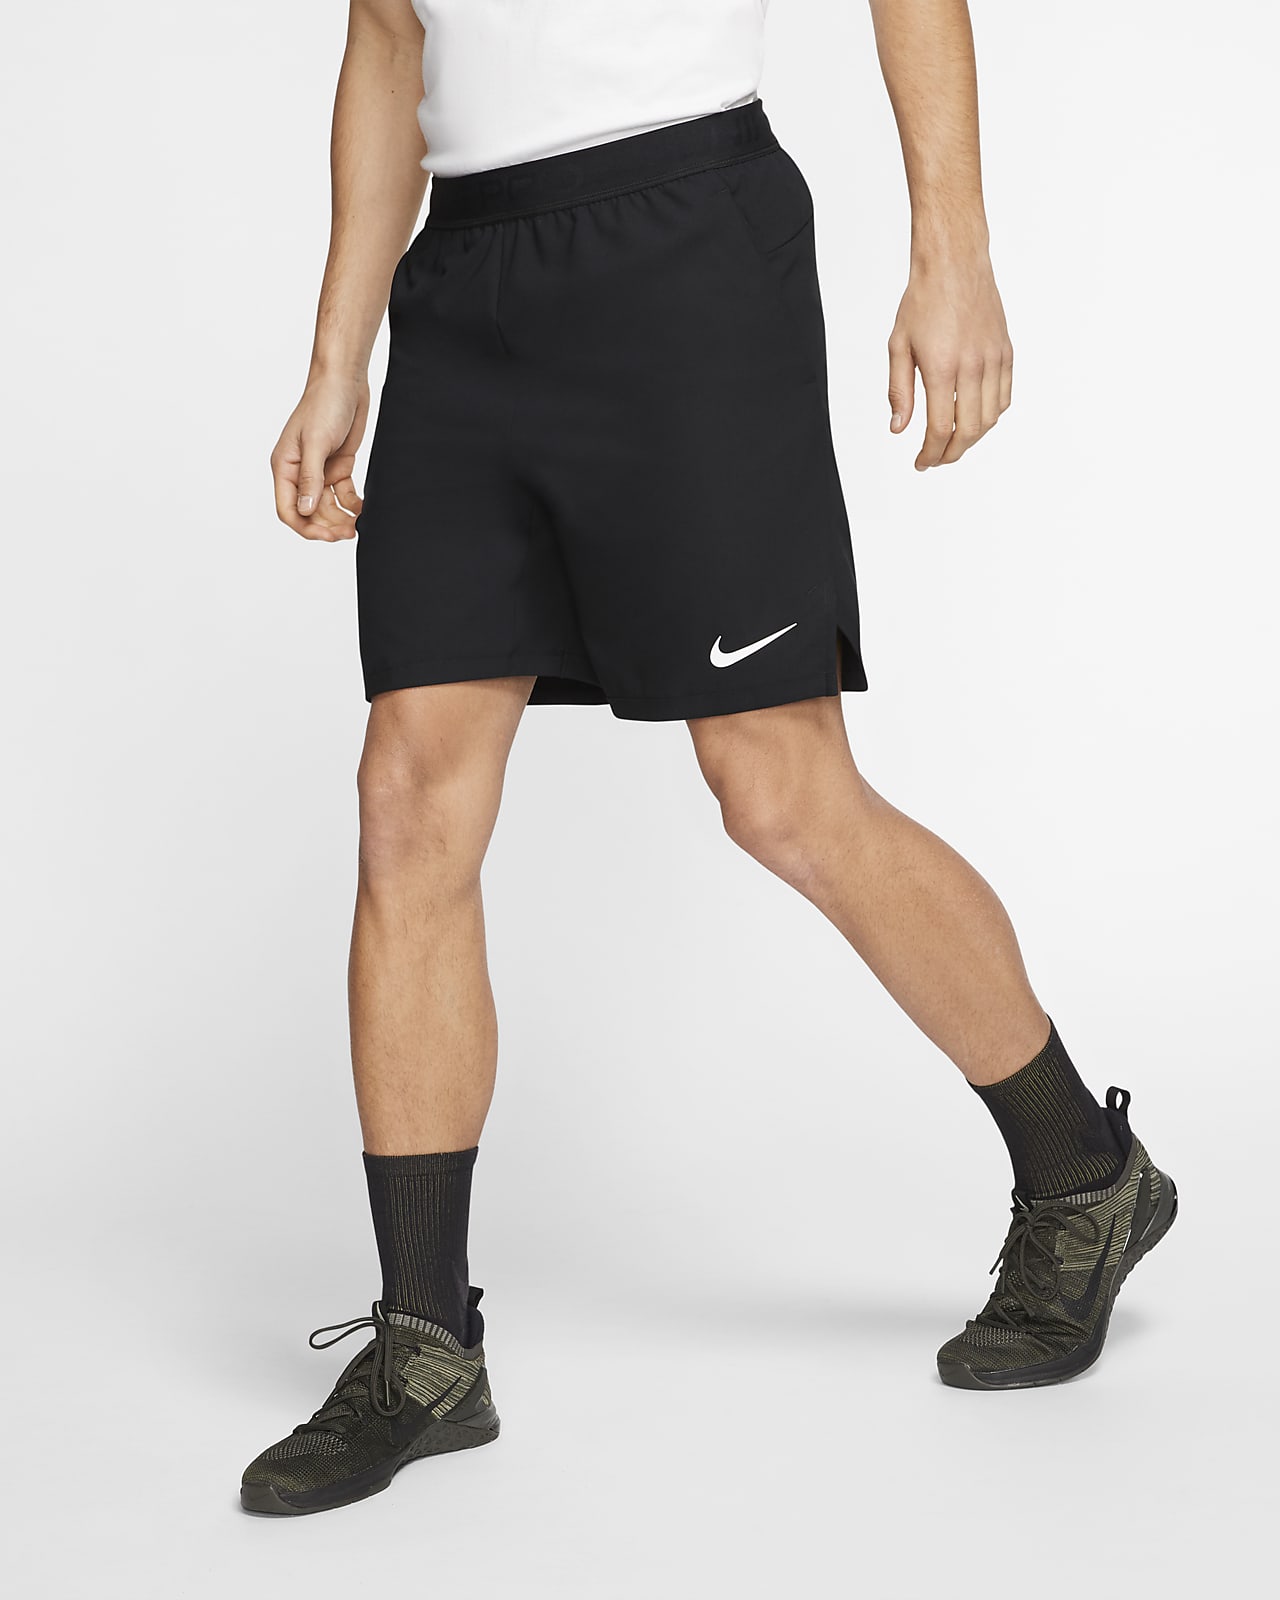 Nike Pro Flex Vent Max Men's Shorts. Nike NZ